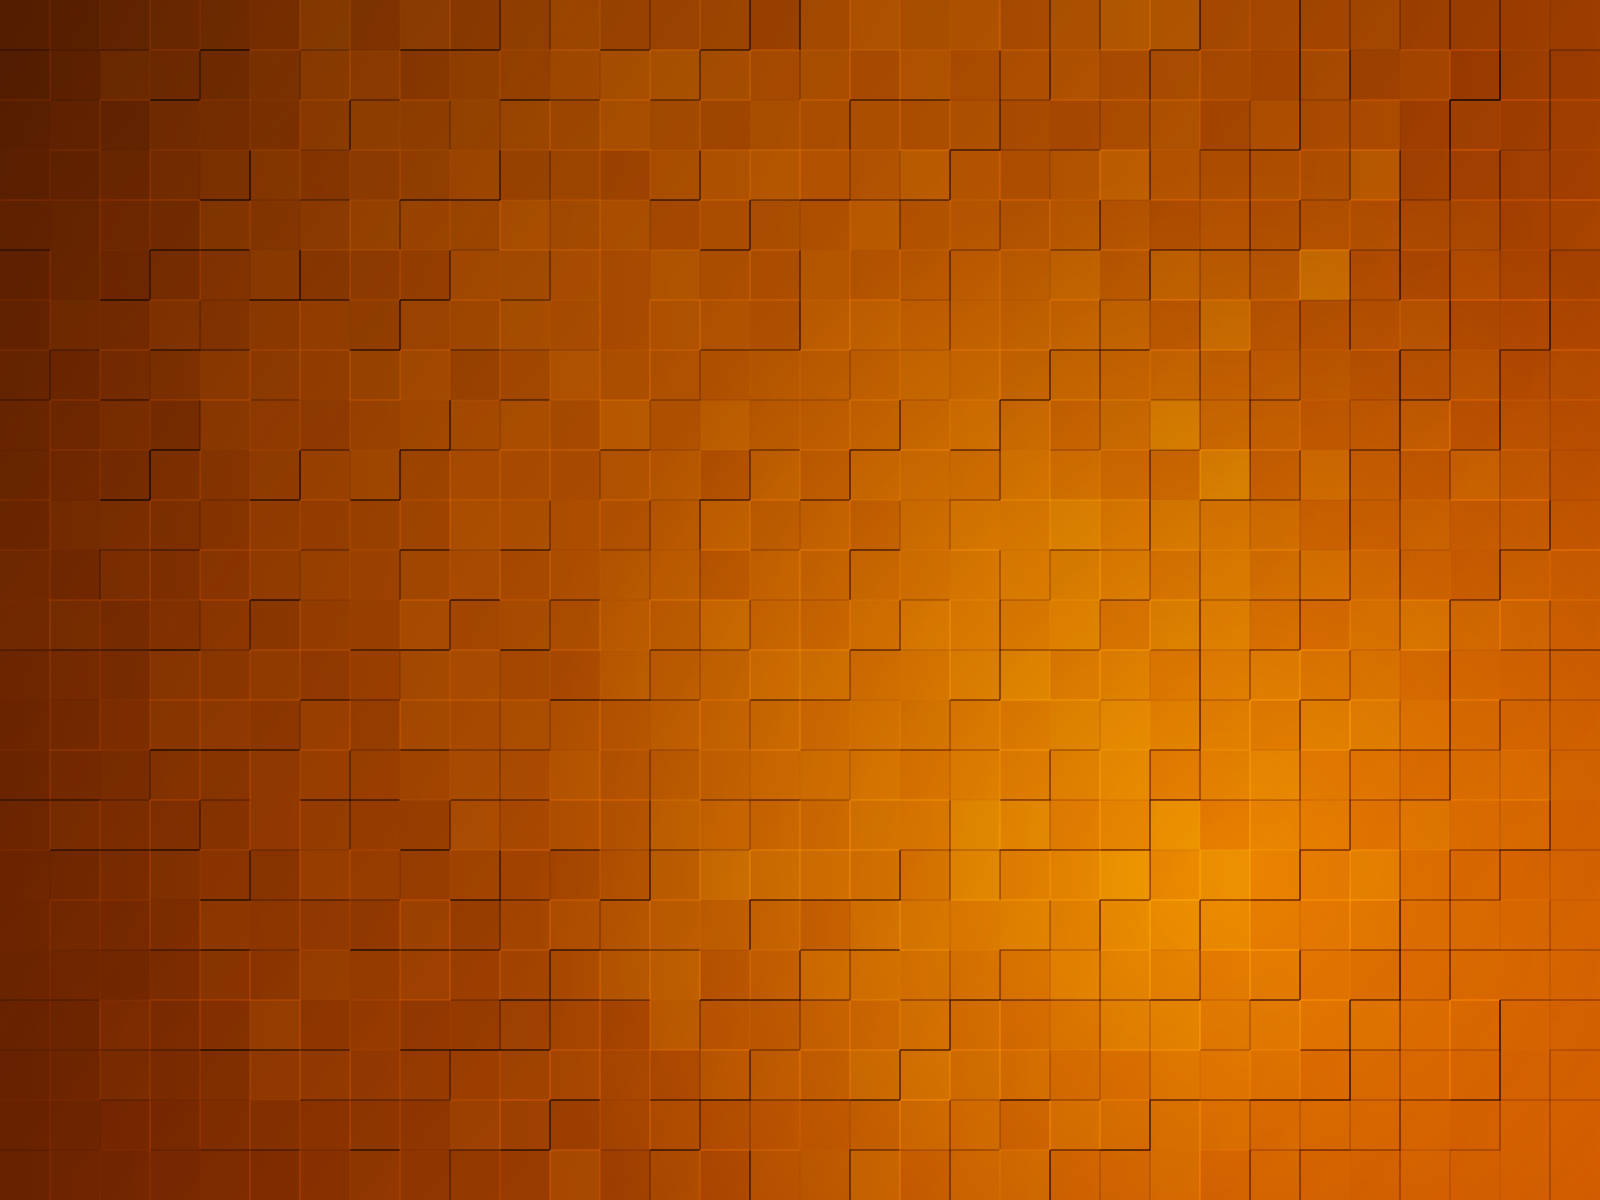 Square Pixels In Tan Aesthetic Wallpaper